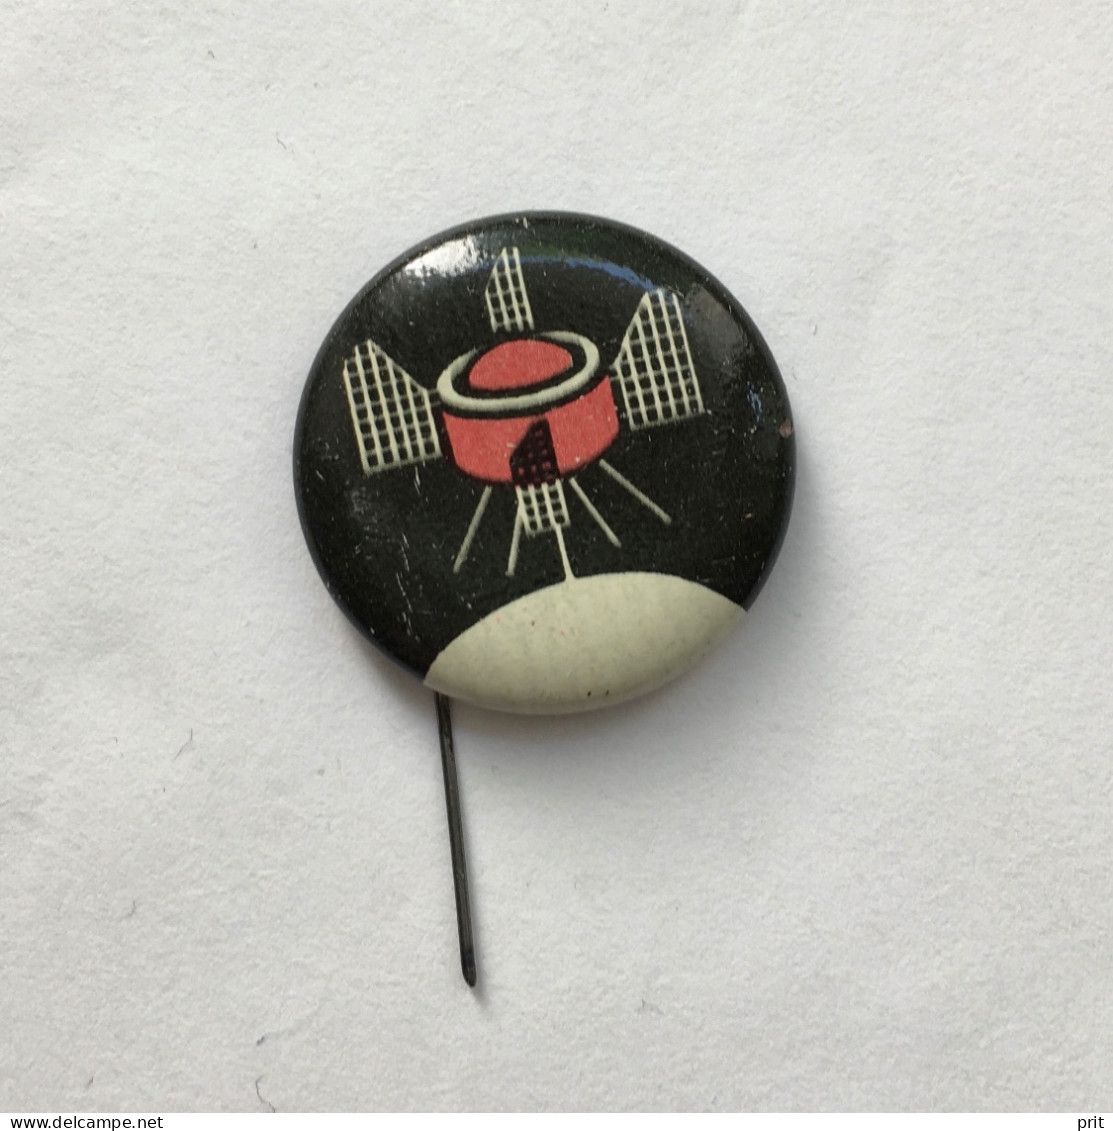 Sputnik Space Cosmos Spaceship Programe Soviet Russia USSR 1960s Vintage Pin Badge Metal - Space